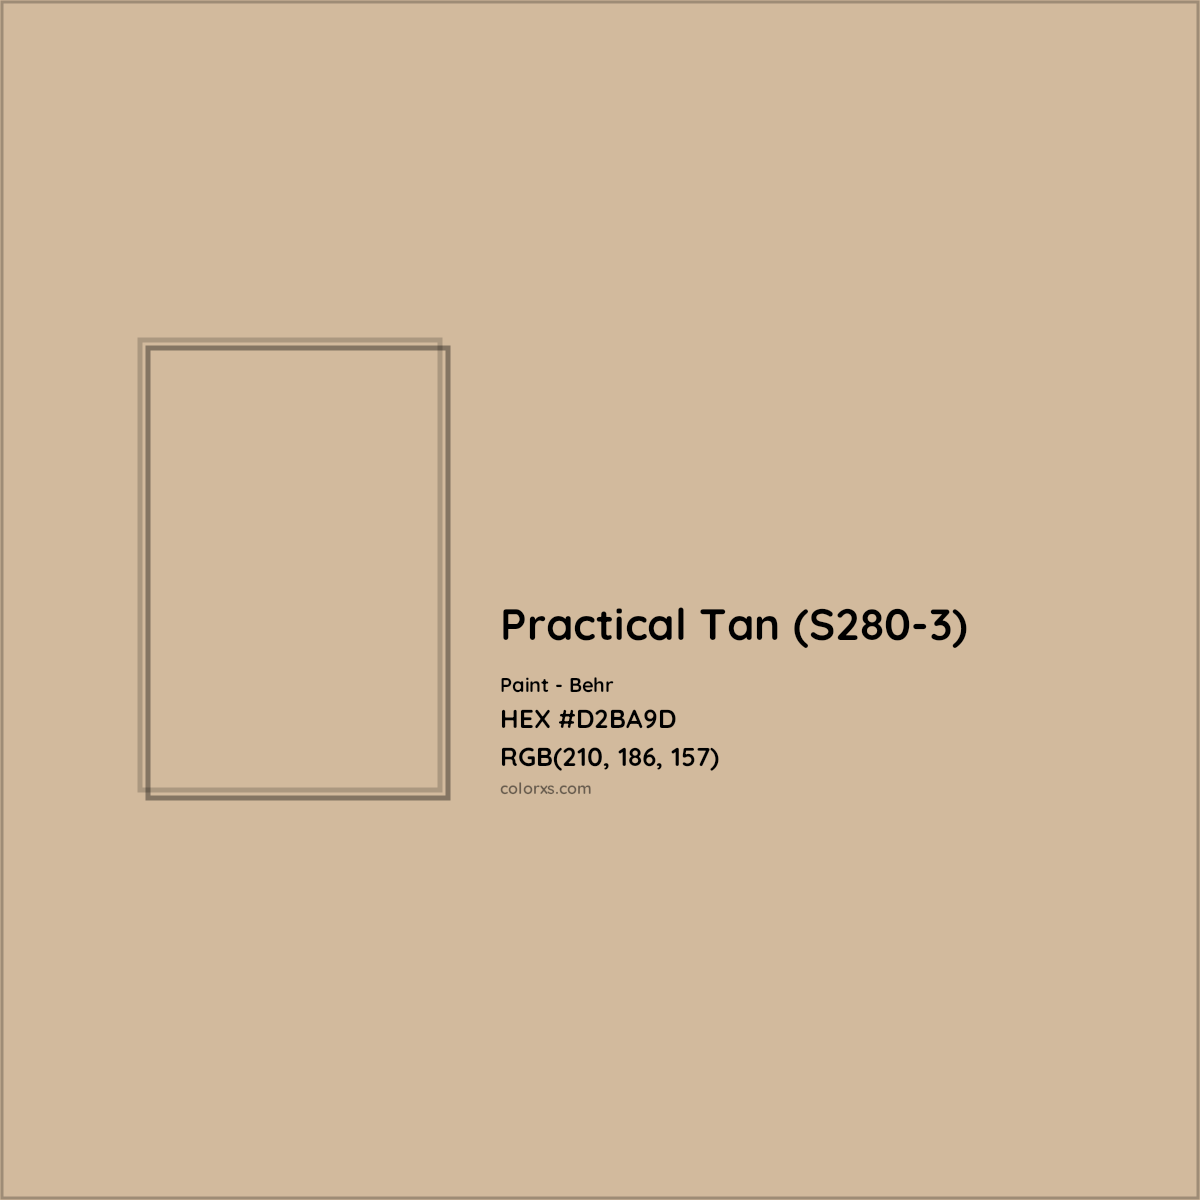 HEX #D2BA9D Practical Tan (S280-3) Paint Behr - Color Code